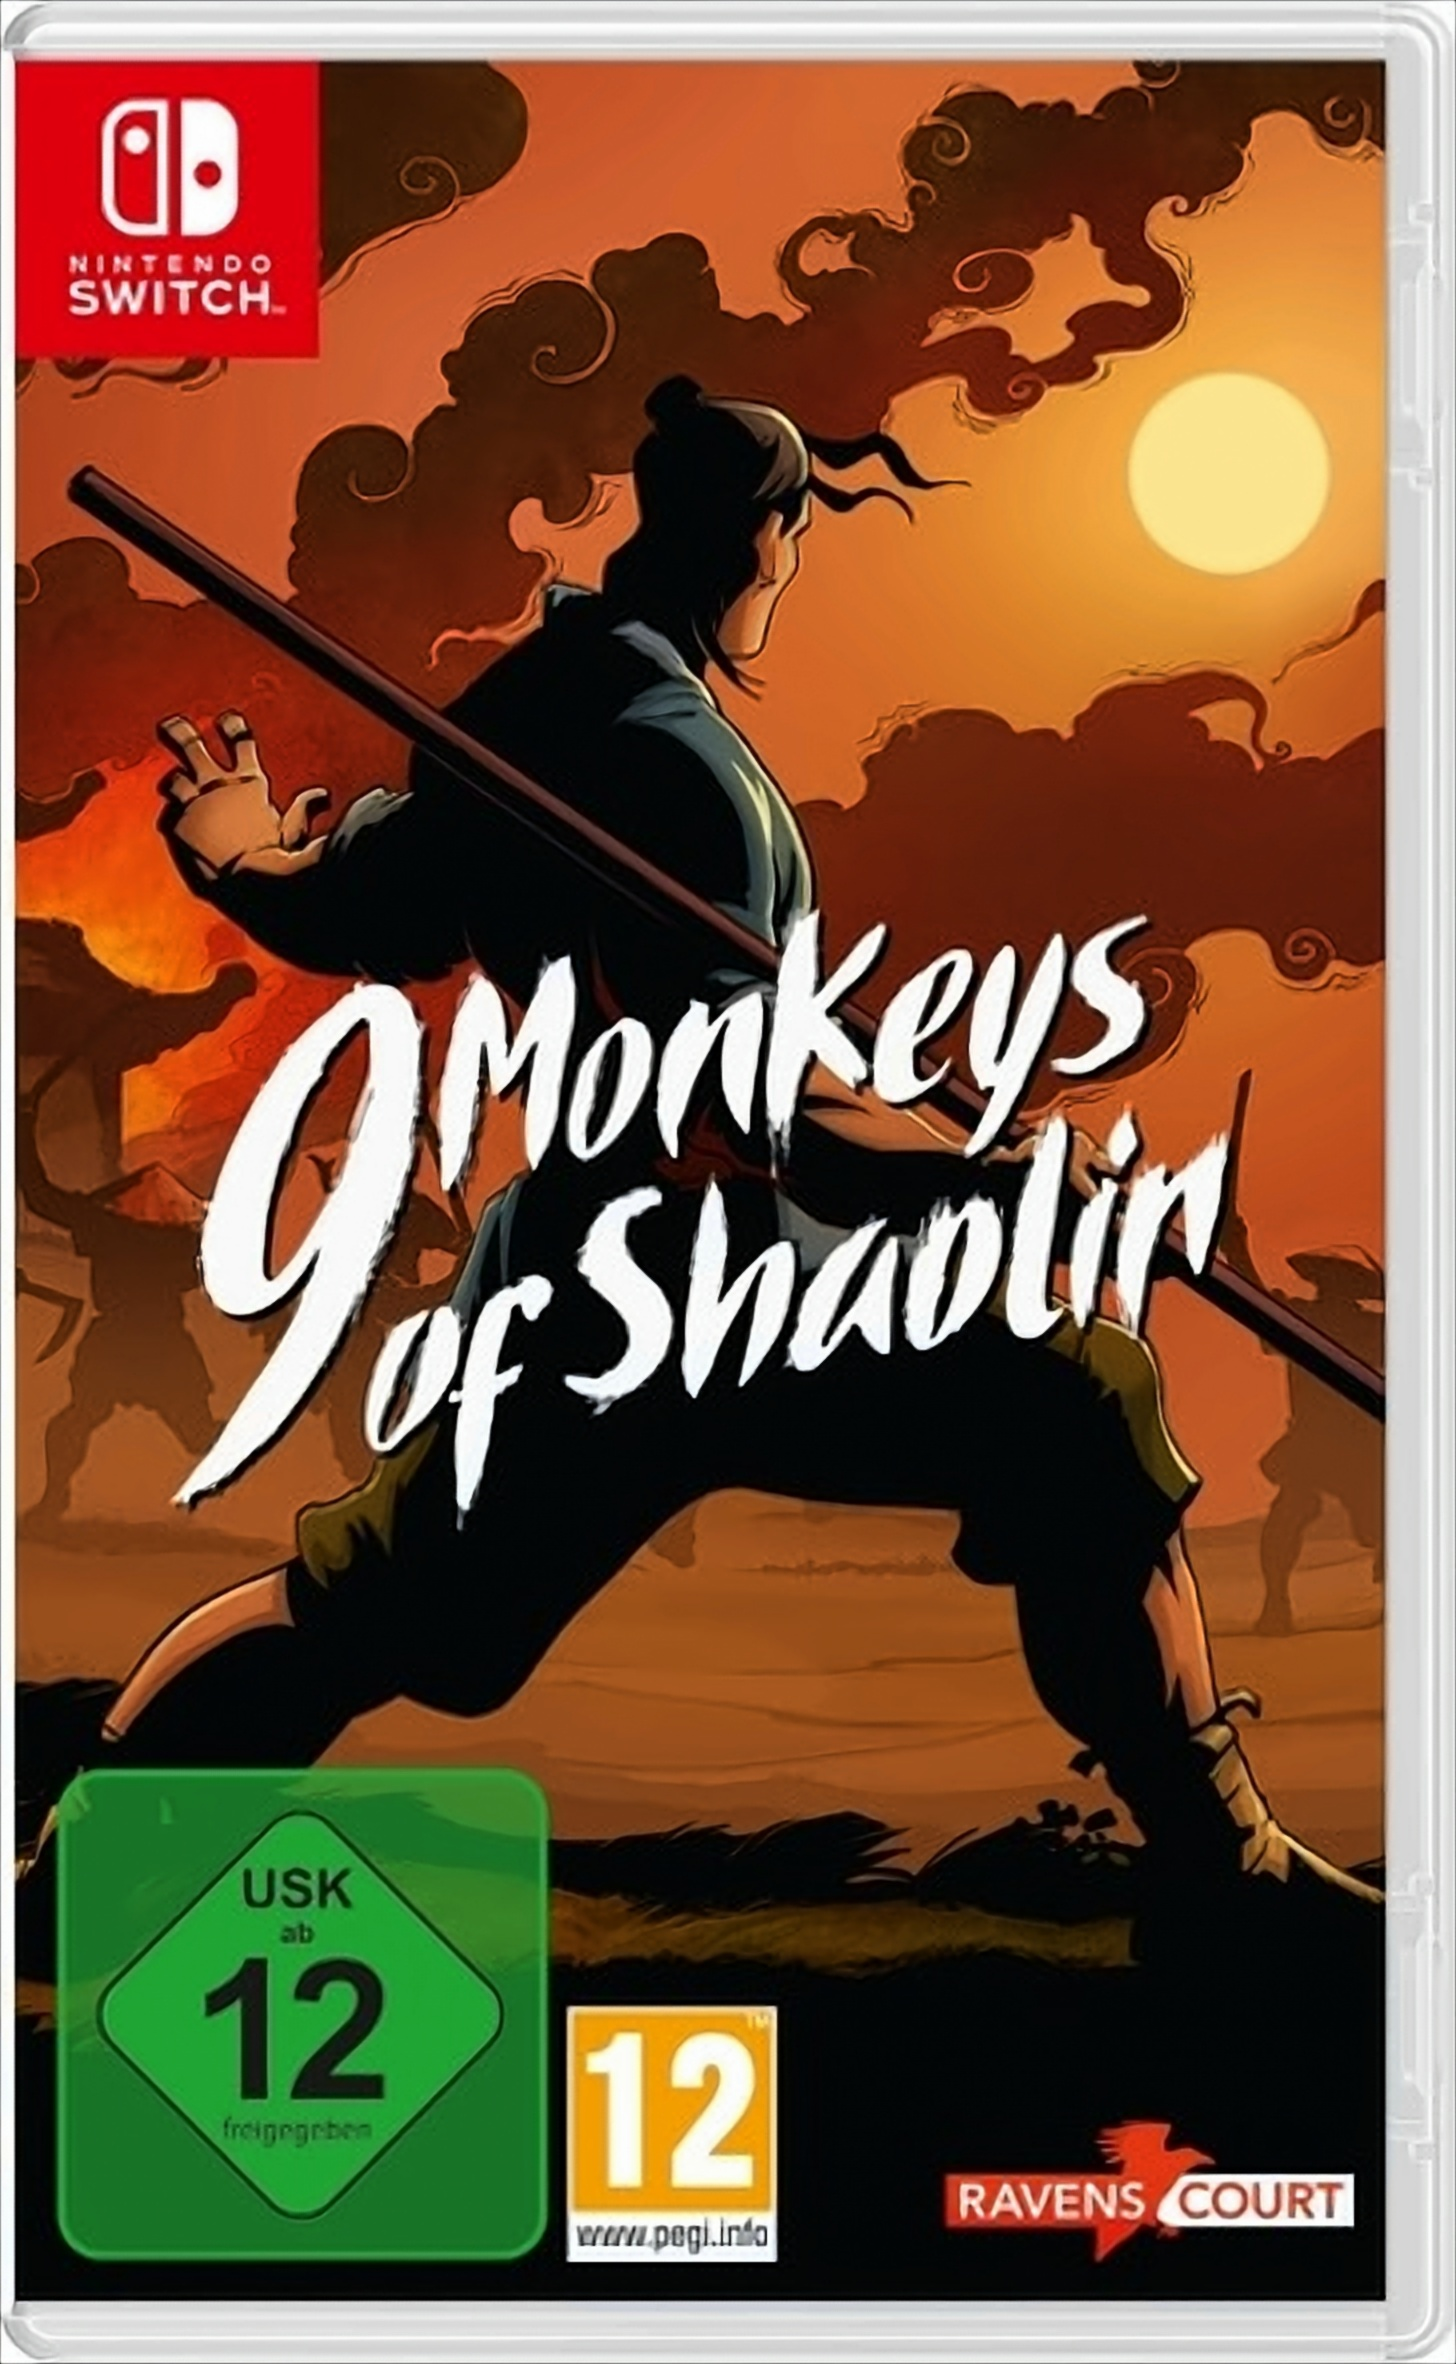 9 Monkeys of Shaolin - [Nintendo Switch